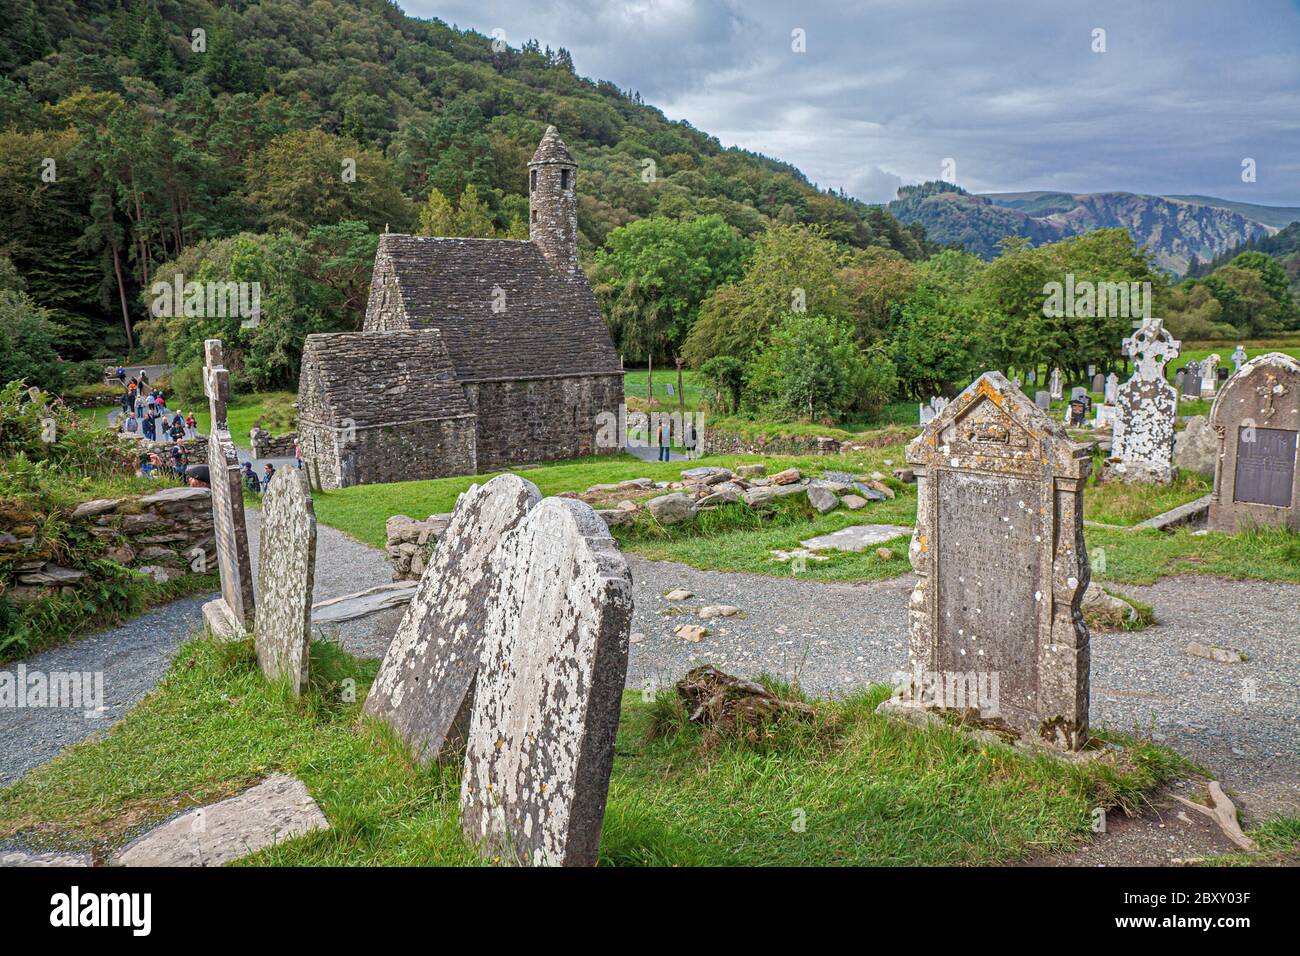 Glendalough, dans le parc national irlandais des montagnes Wicklow, préserve une ancienne colonie monastique médiévale fondée au sixième siècle par Saint-Kevin. Banque D'Images